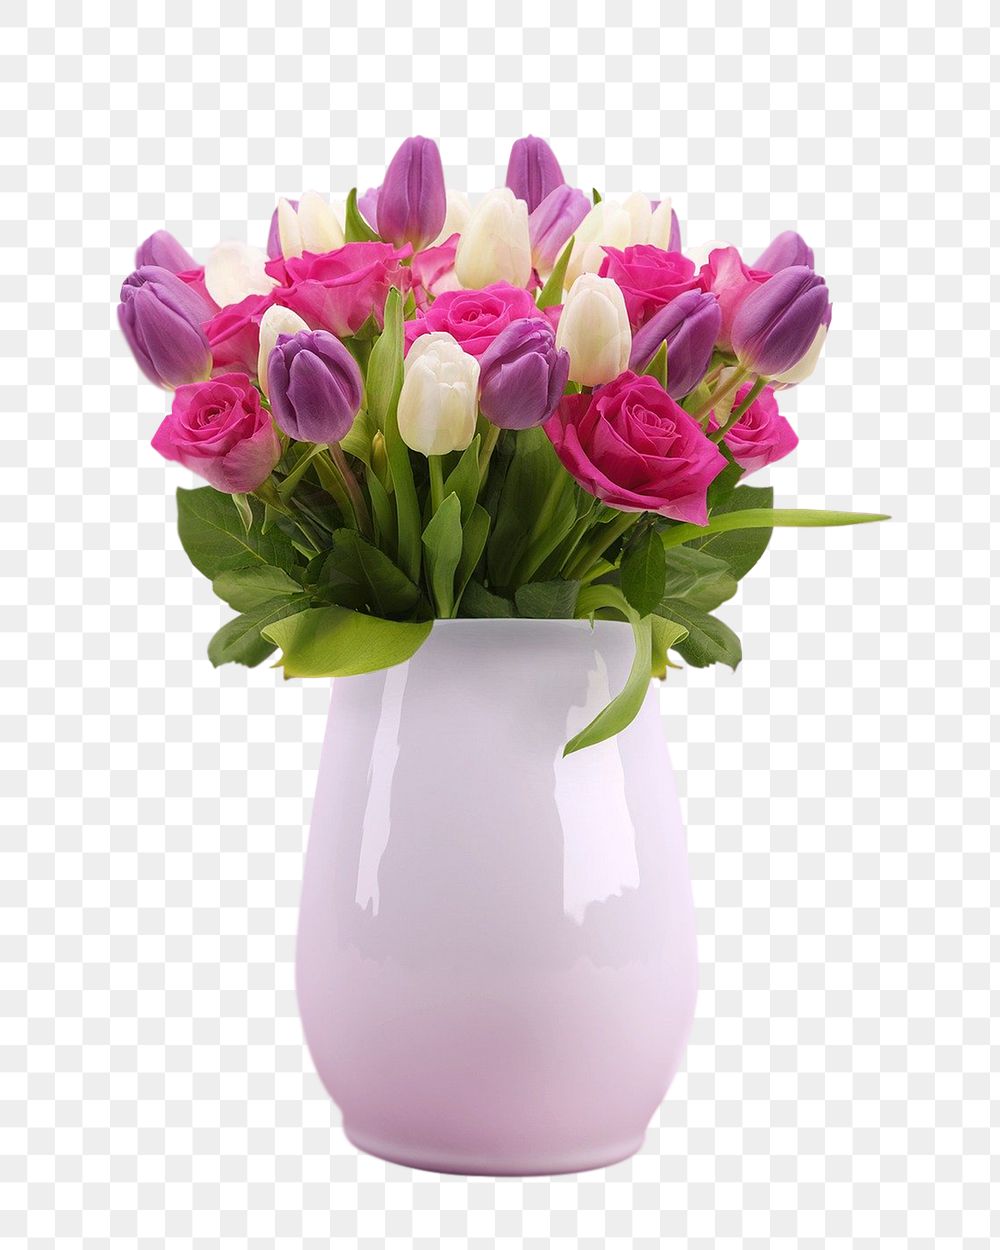 Pink flower vase png sticker, transparent background